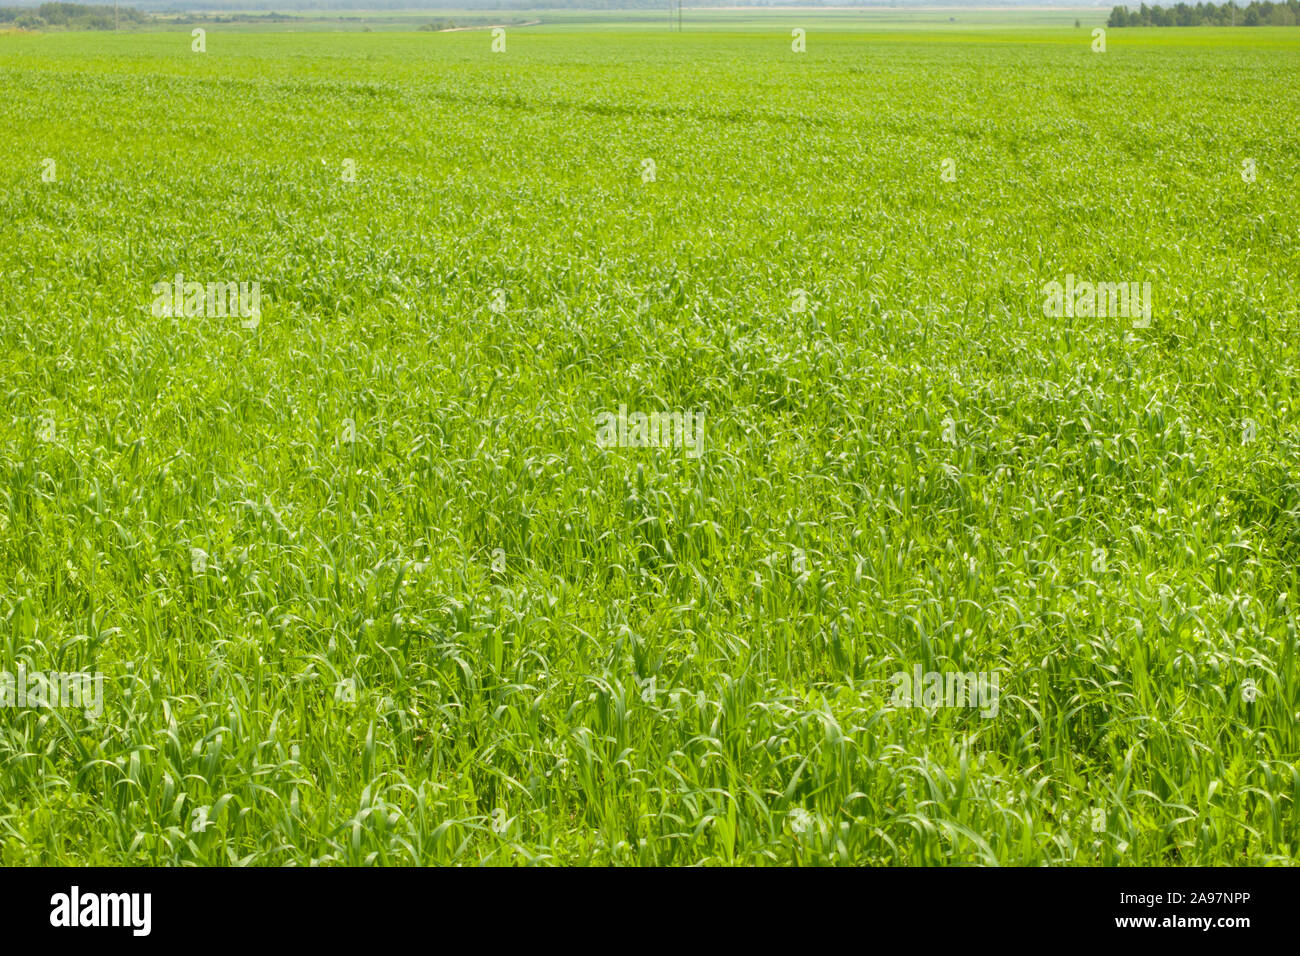 Beautiful landscape, fresh green grass field. Green grass meadow. Stock Photo